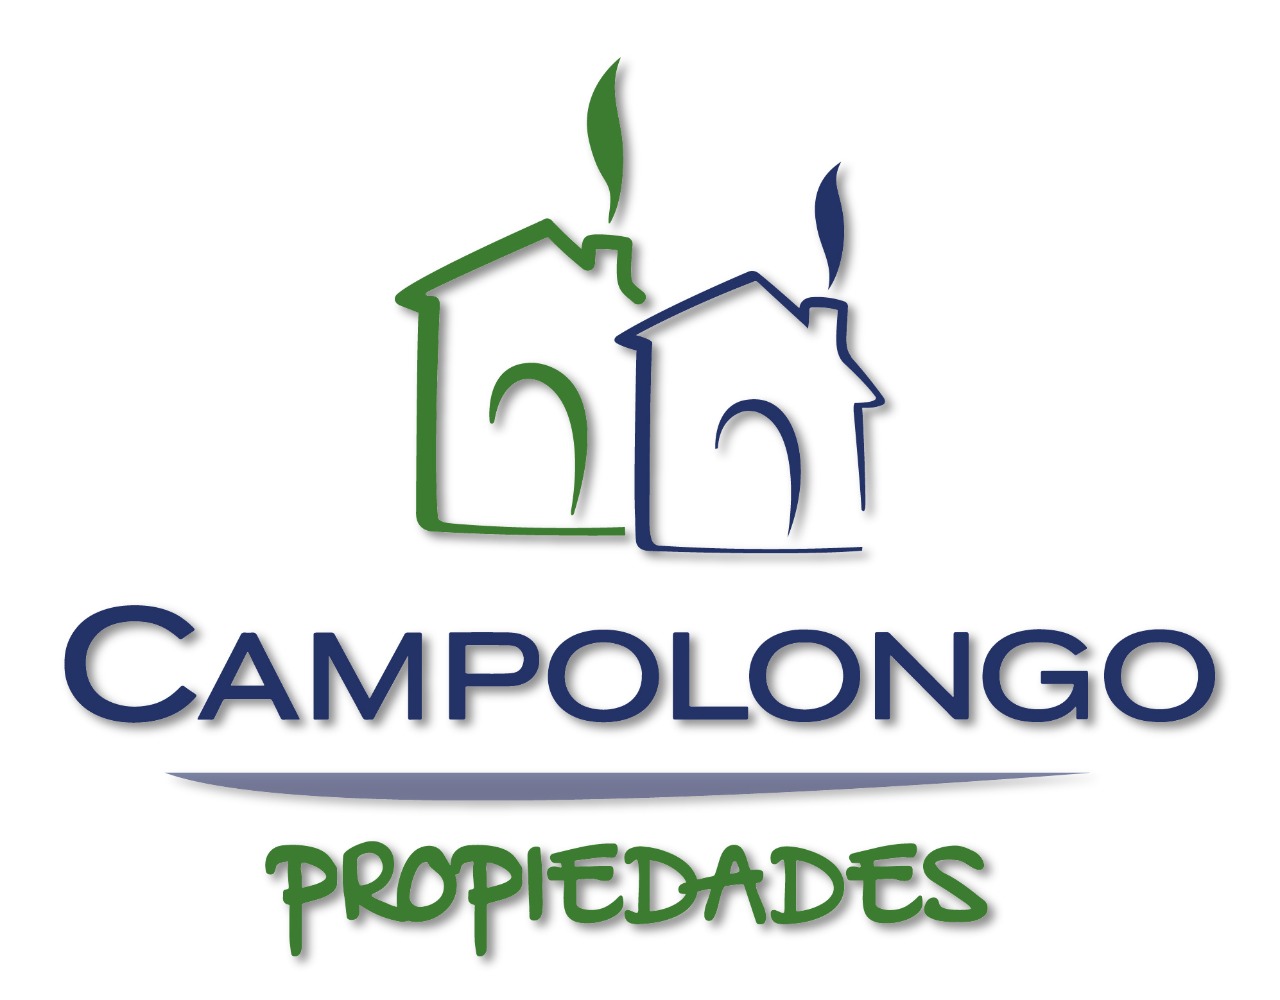 CAMPOLONGO PROPIEDADES